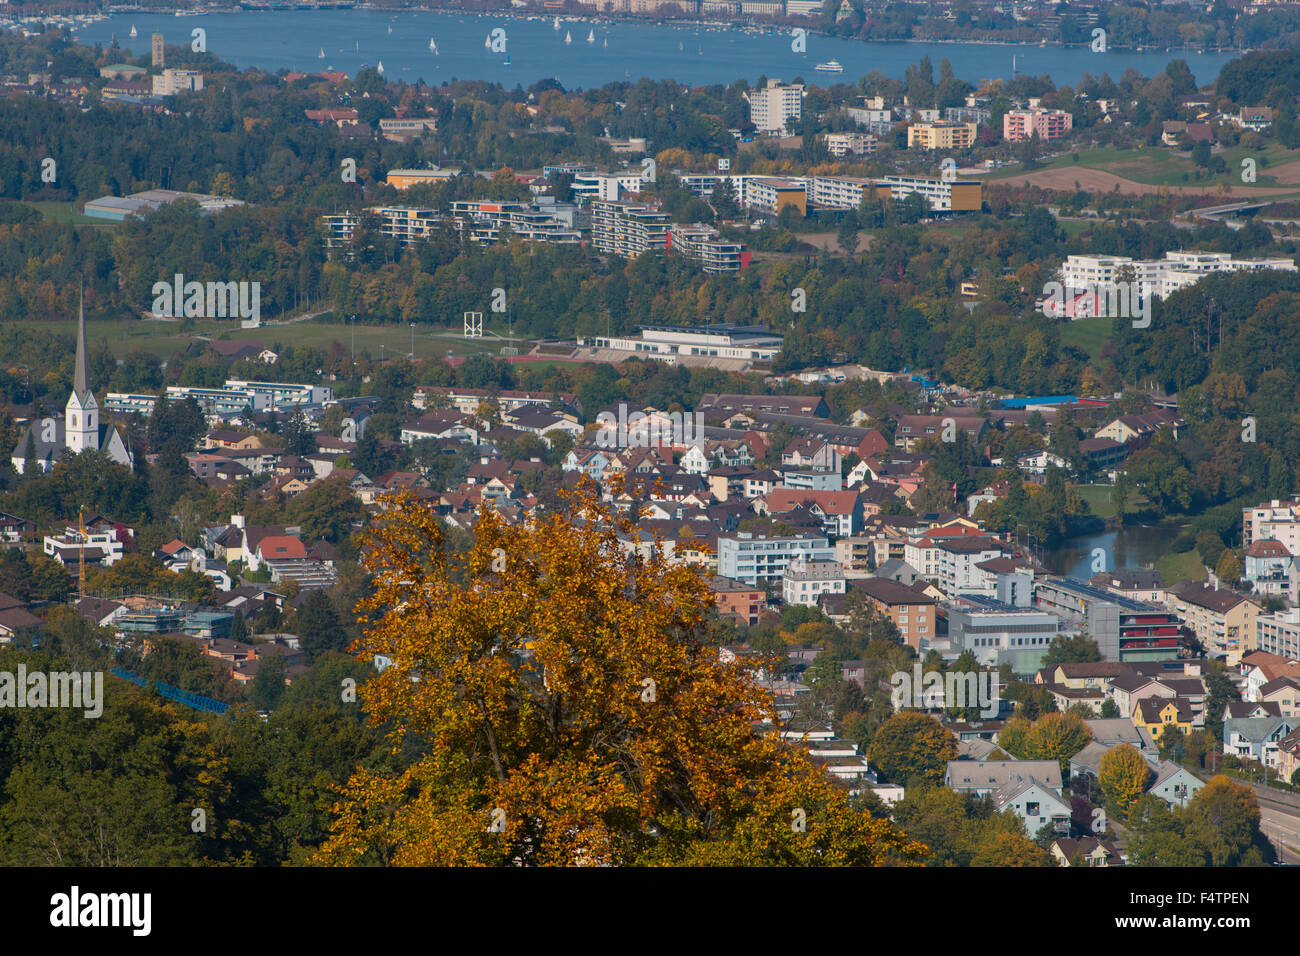 Switzerland, Europe, canton Zurich, Adliswil, town, autumn, Zurich lake, Stock Photo